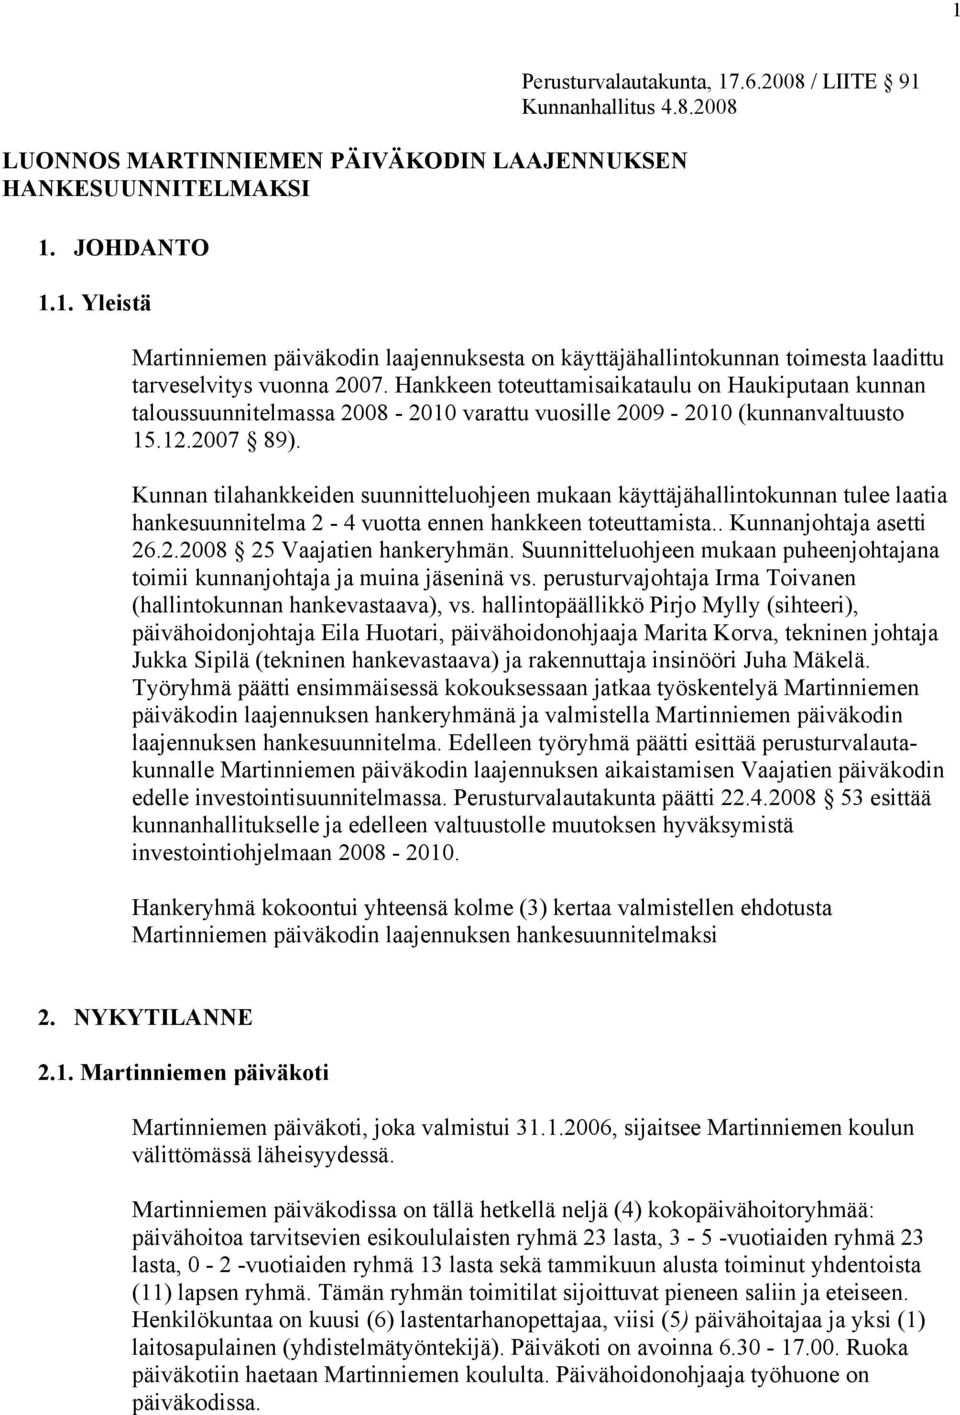 Hankkeen toteuttamisaikataulu on Haukiputaan kunnan taloussuunnitelmassa 2008-2010 varattu vuosille 2009-2010 (kunnanvaltuusto 15.12.2007 89).